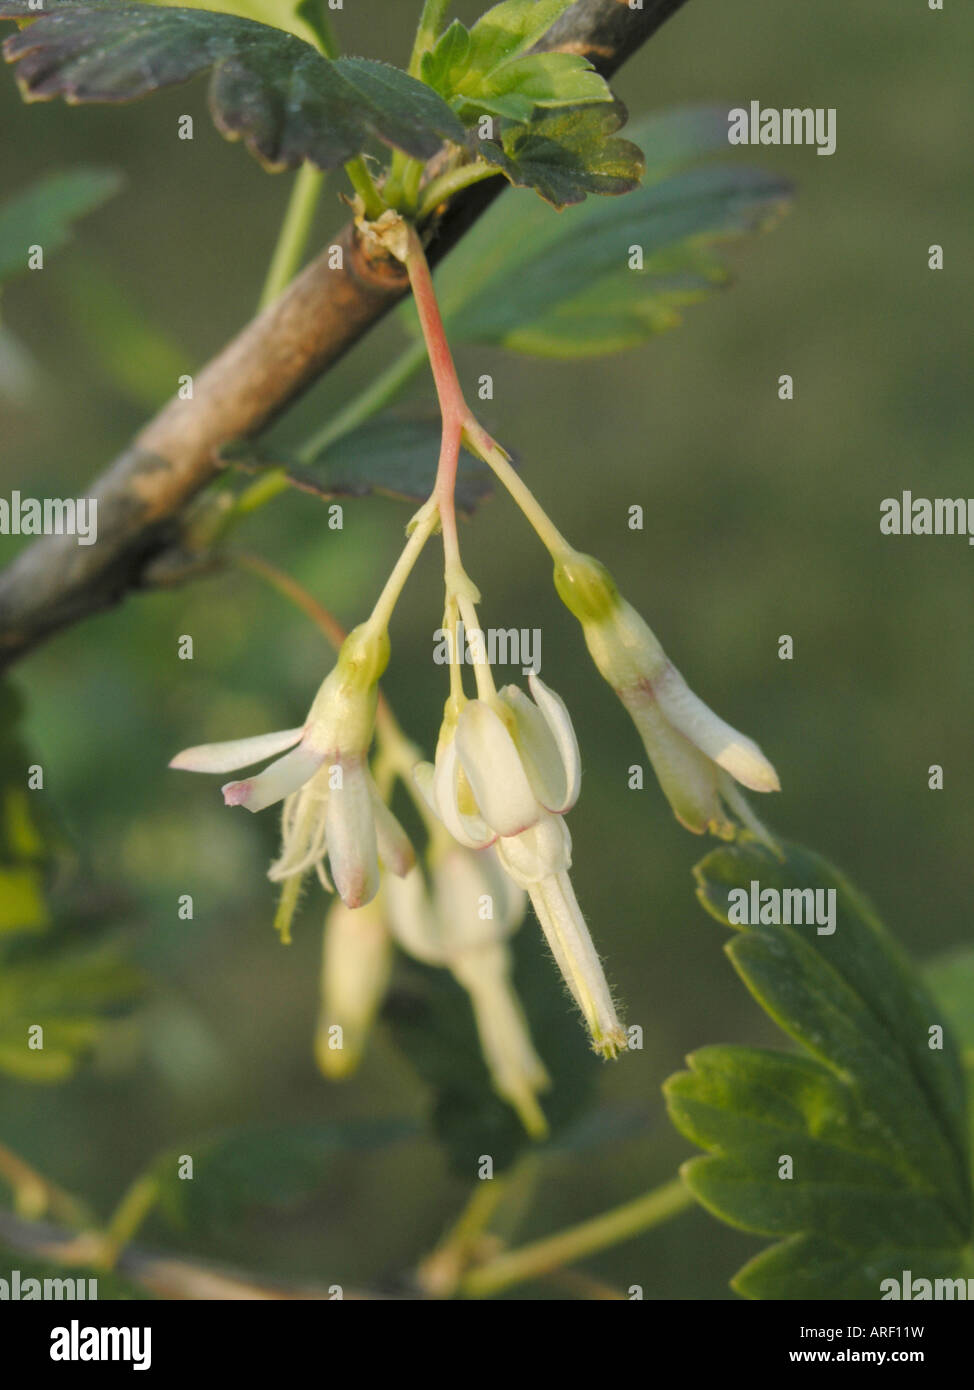 Common gooseberry (Ribes divaricatum) Stock Photo